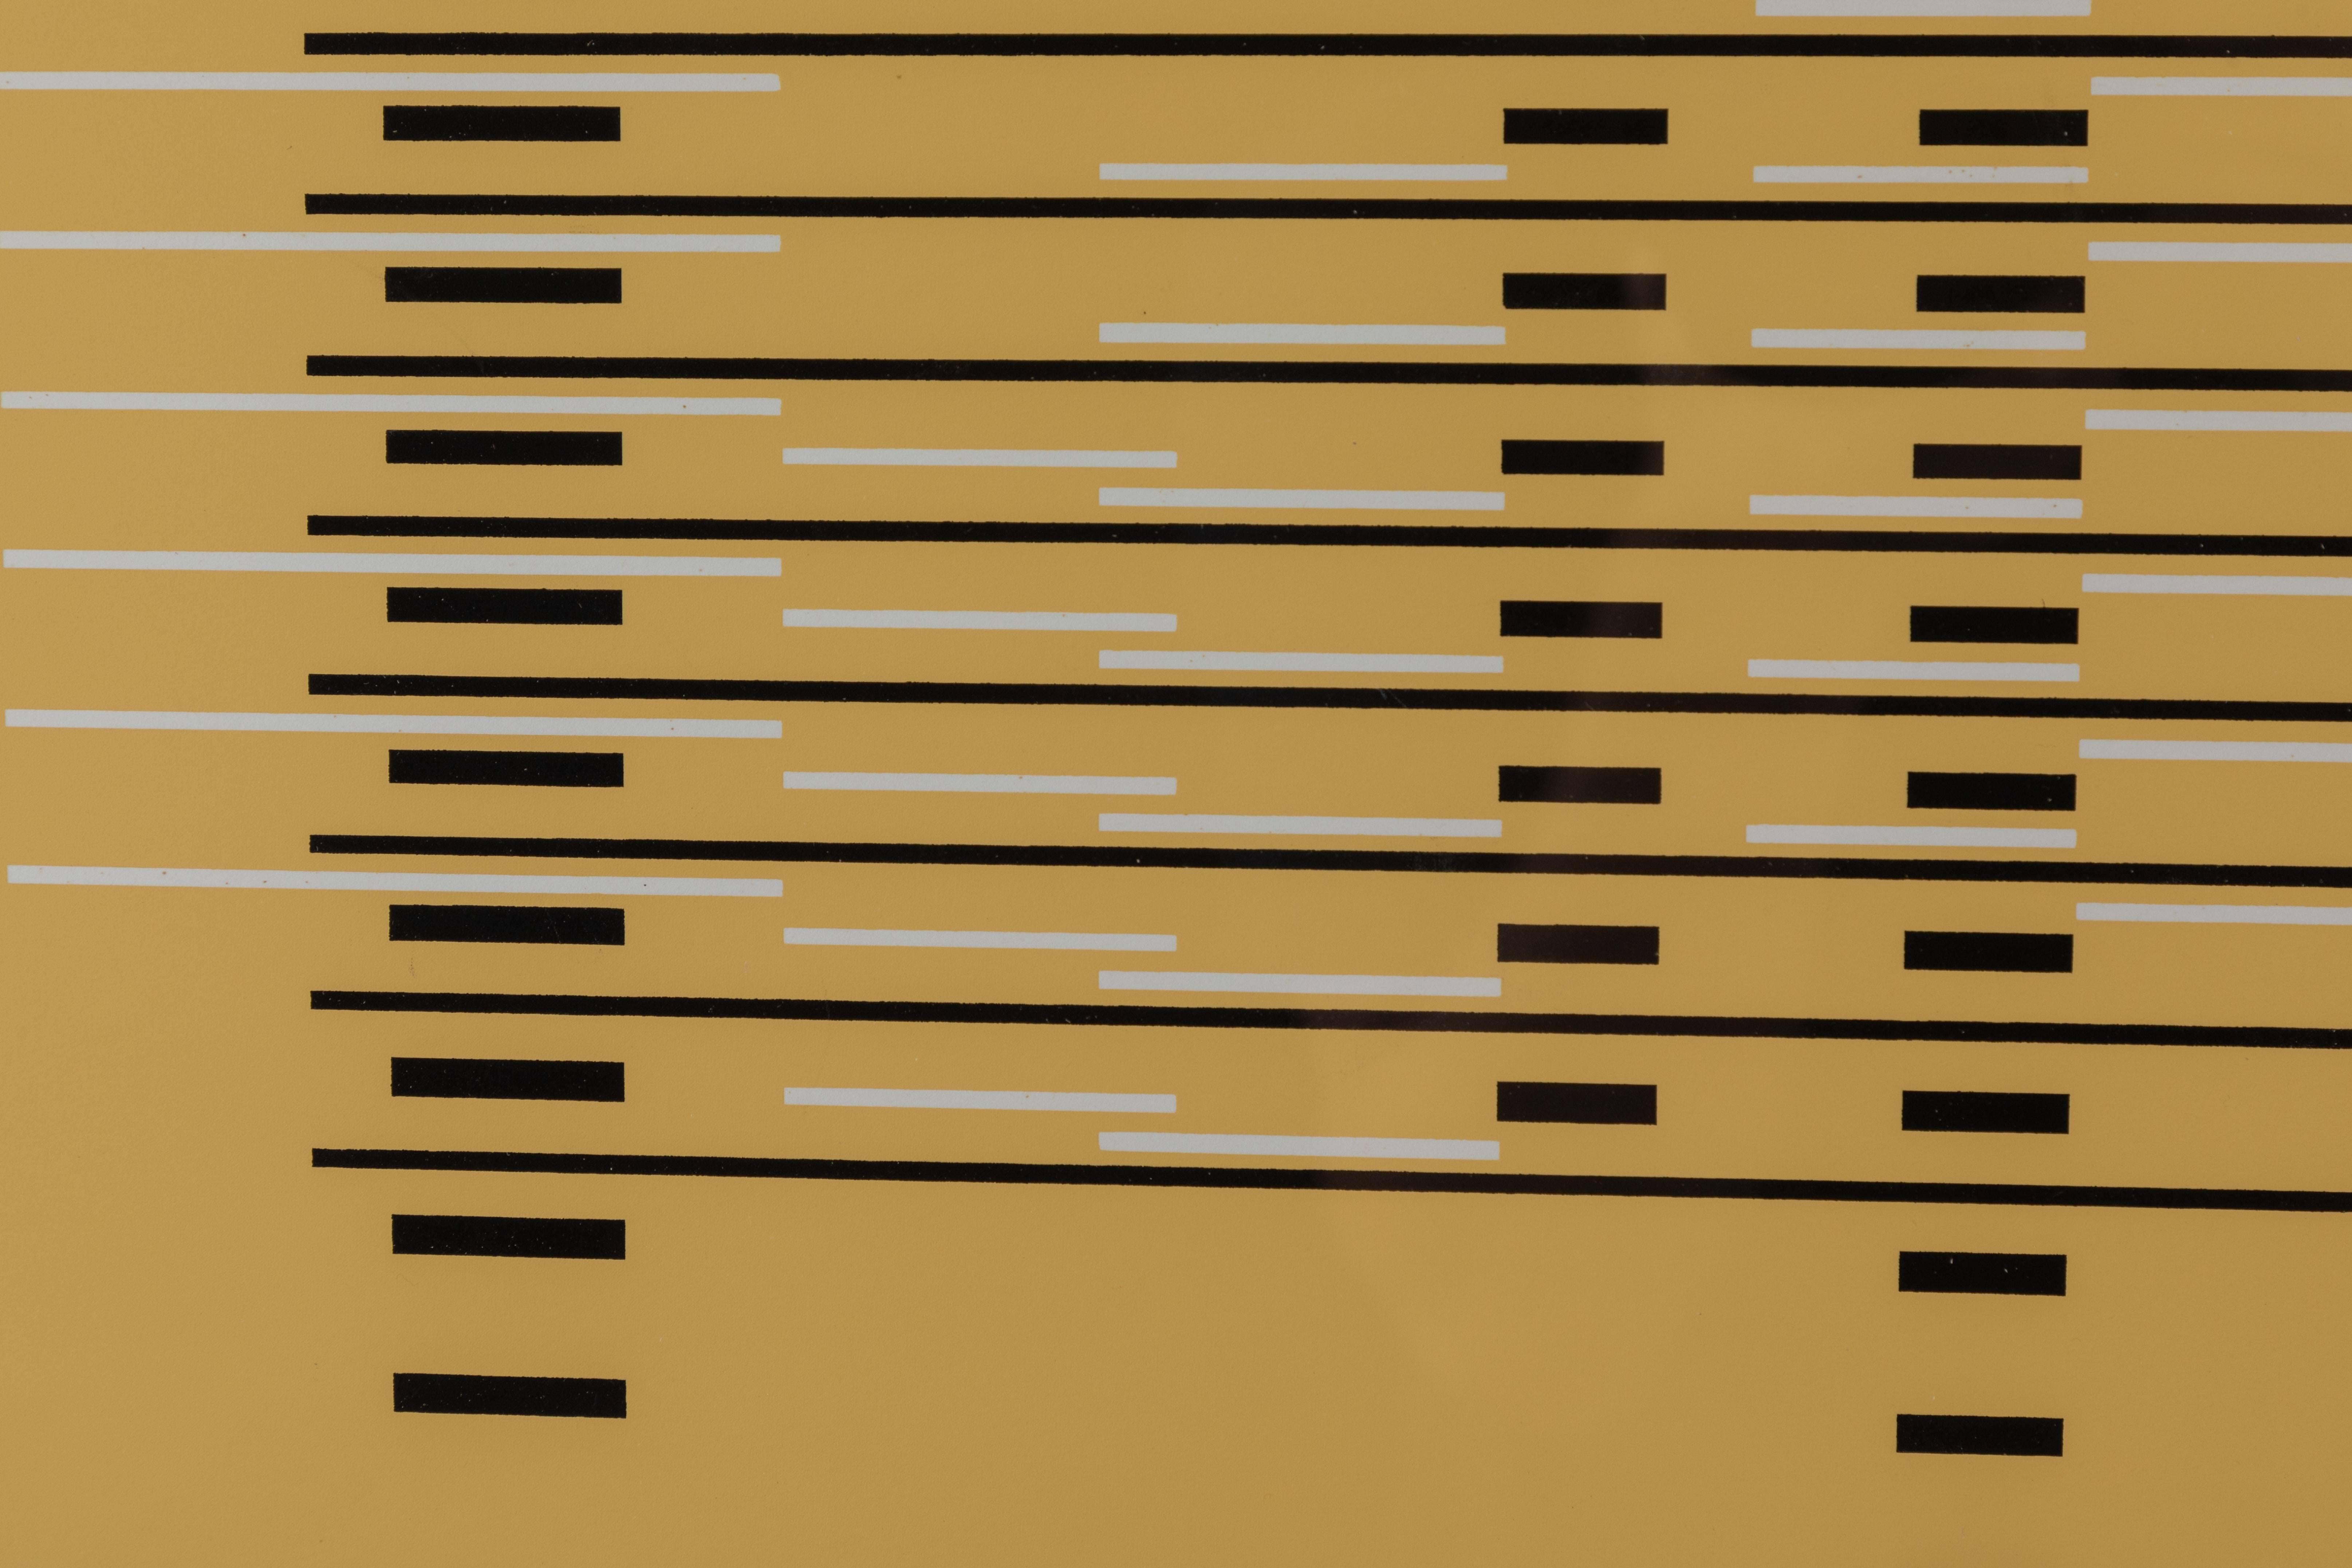 Silkscreen print from Formulation Articulation by Josef Albers.